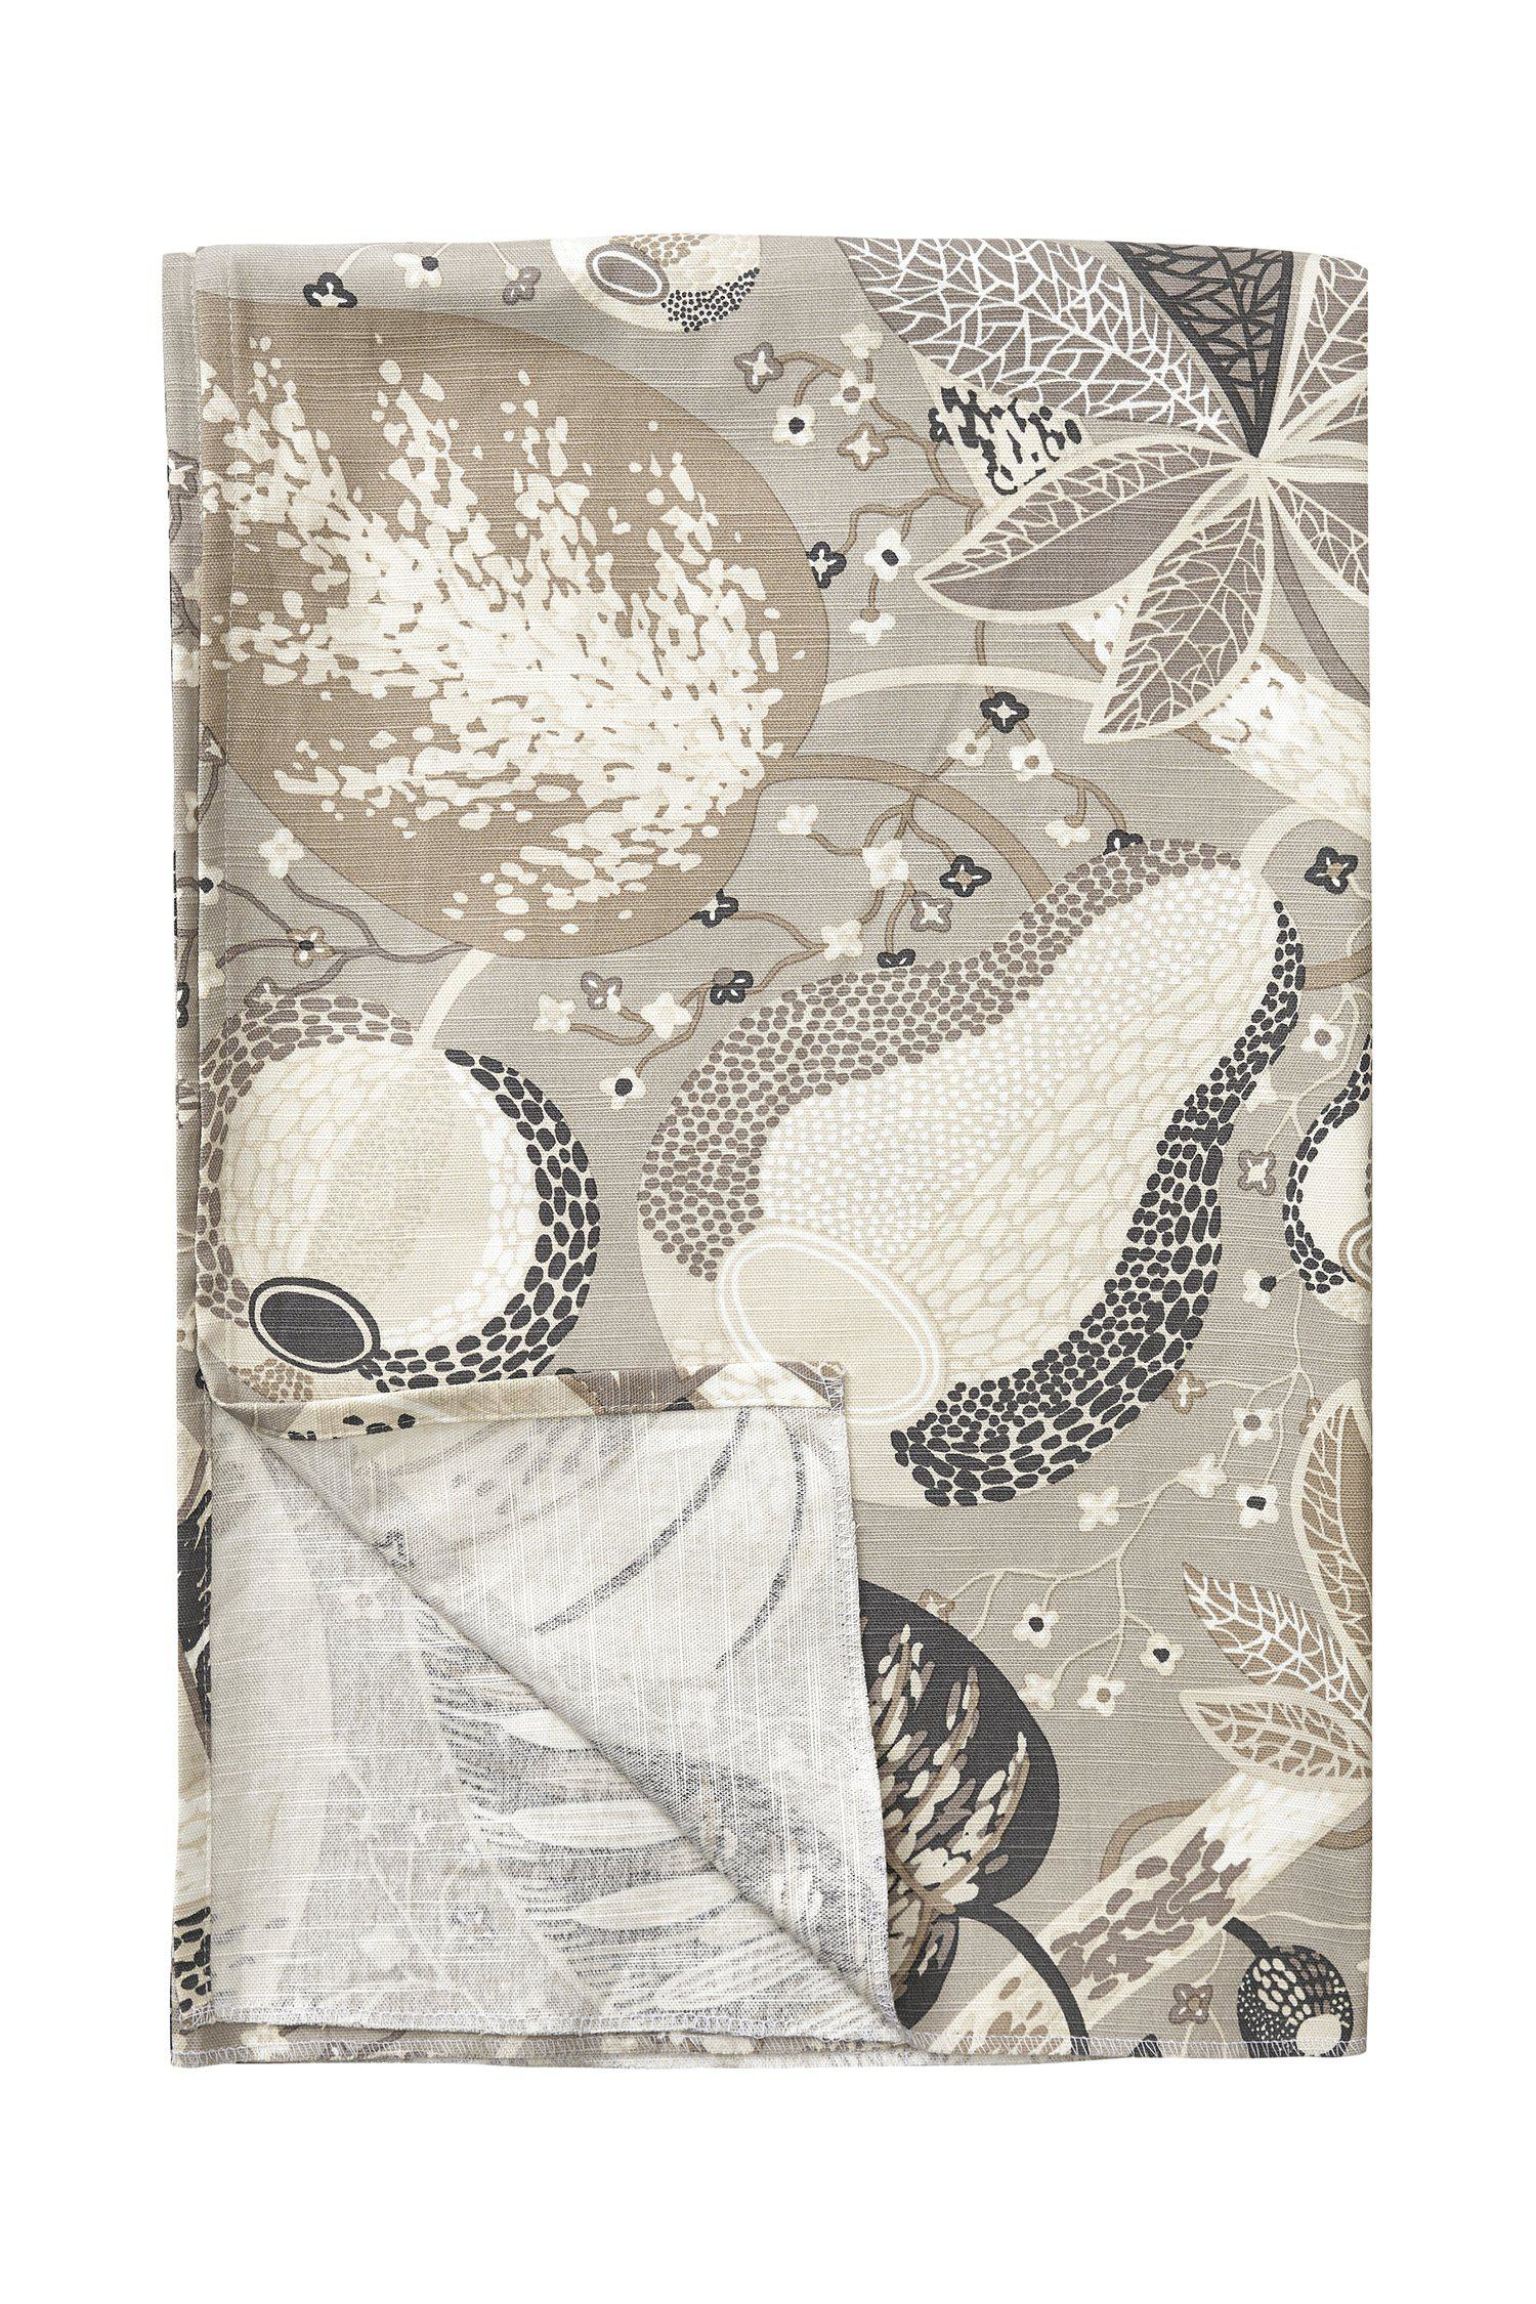 Скатерть Svanefors Adam & Eva, бежевый скатерть прямоугольная из хлопковой ткани с принтом olrik 140 x 240 см серый